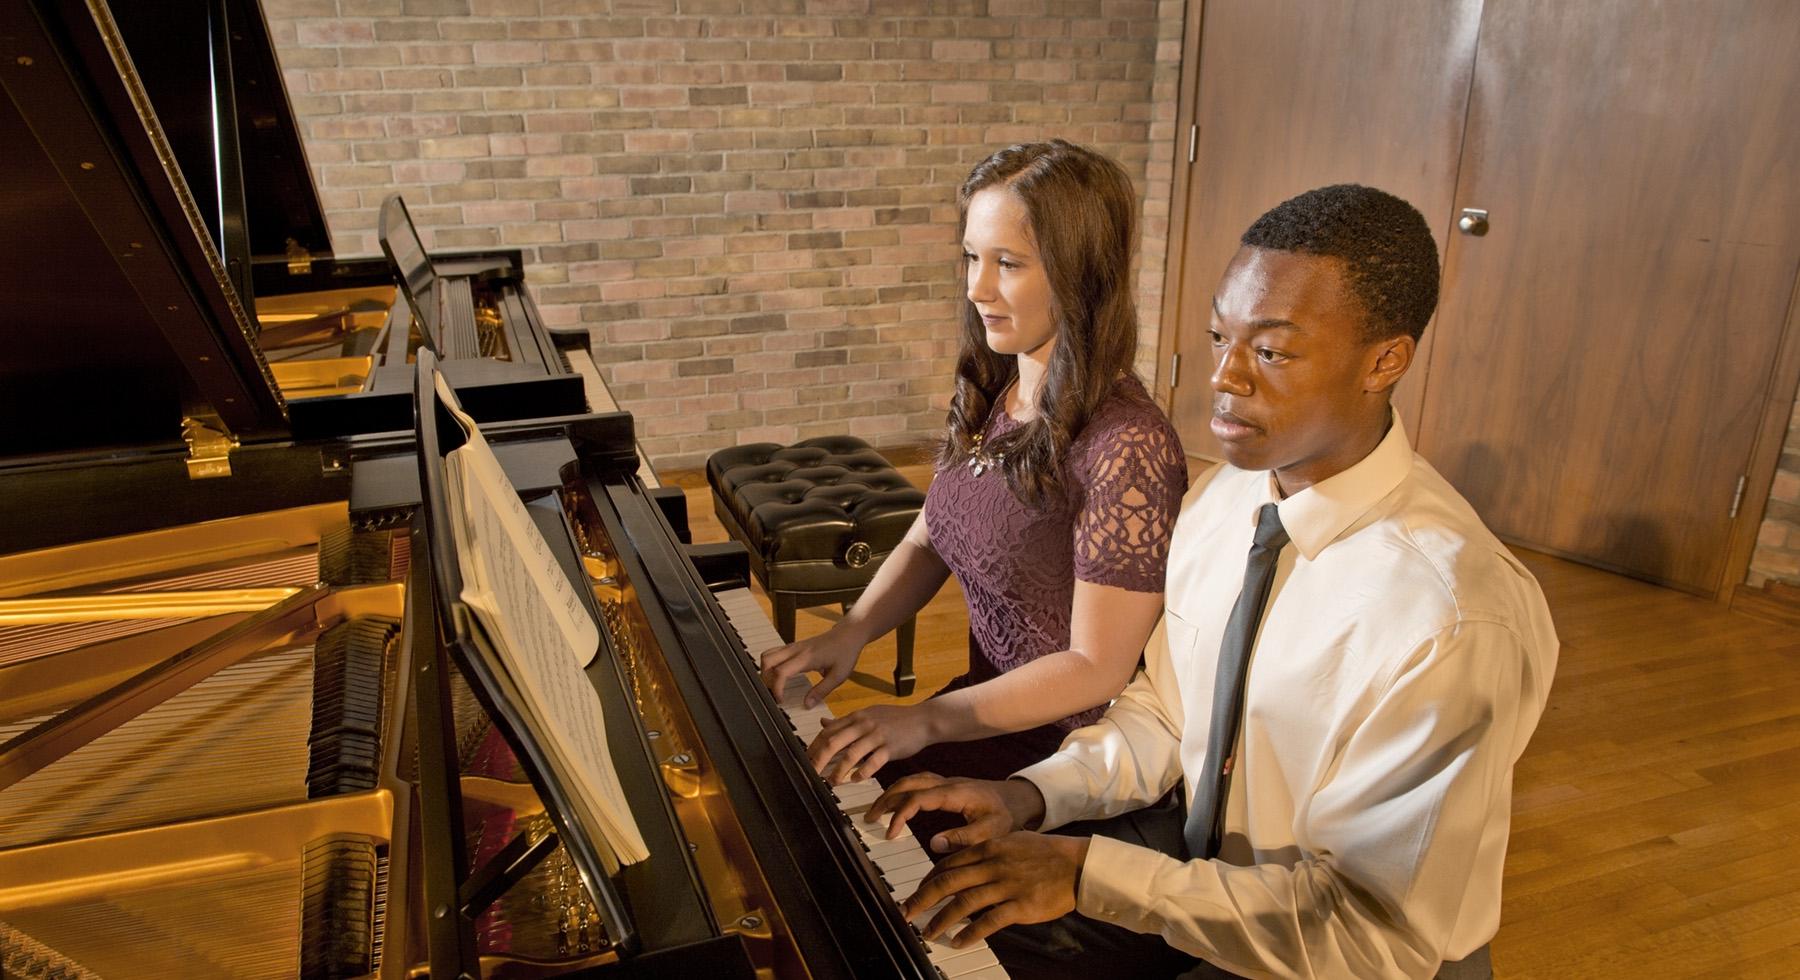 Mount Union大学的学生在Presser独奏厅演奏钢琴